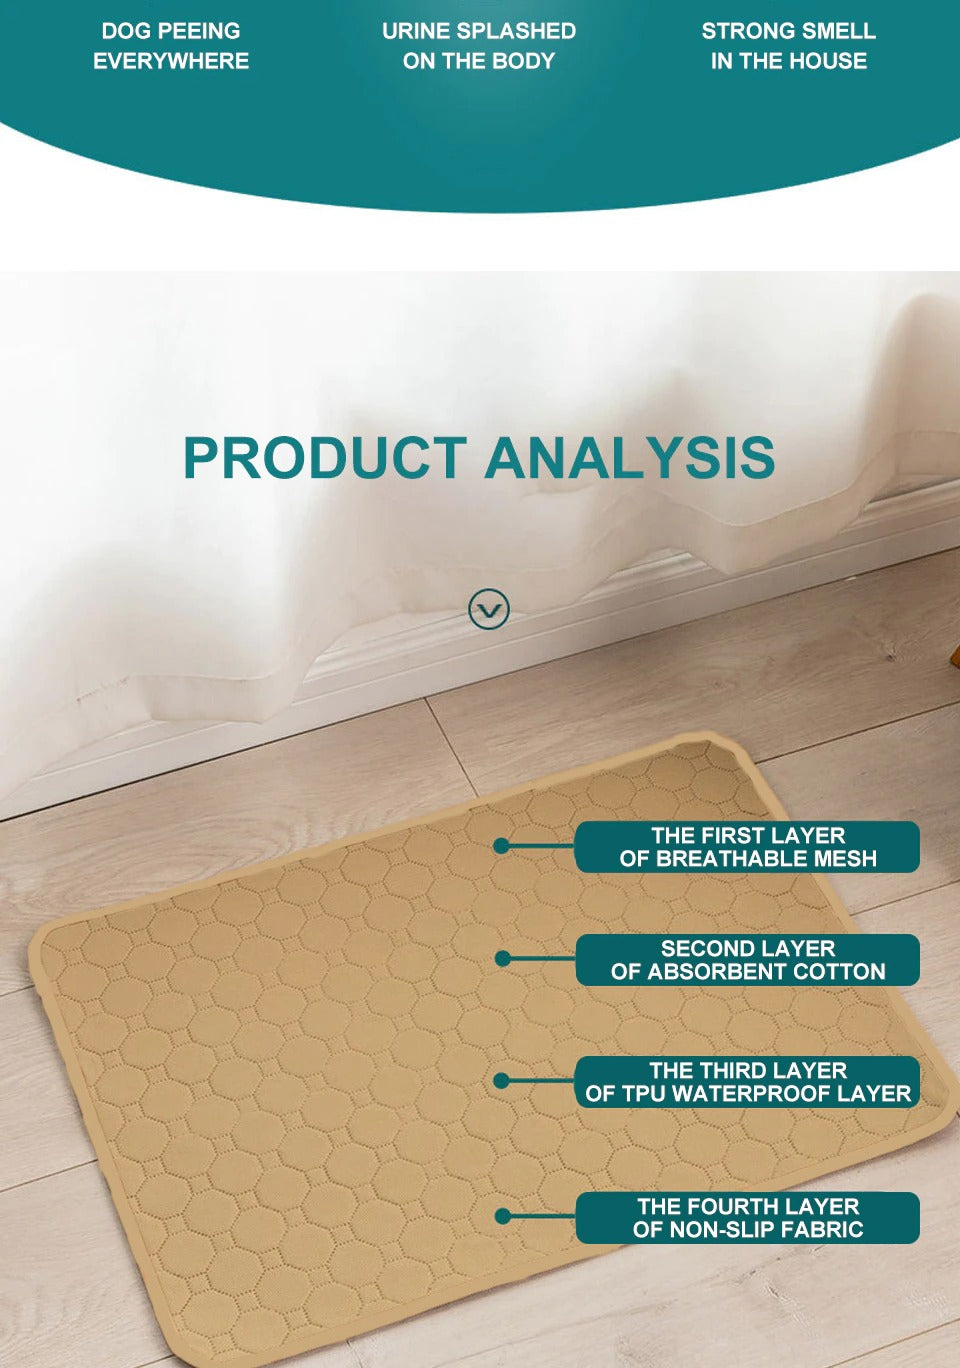 Dog washable Training pee pad.- product analysis